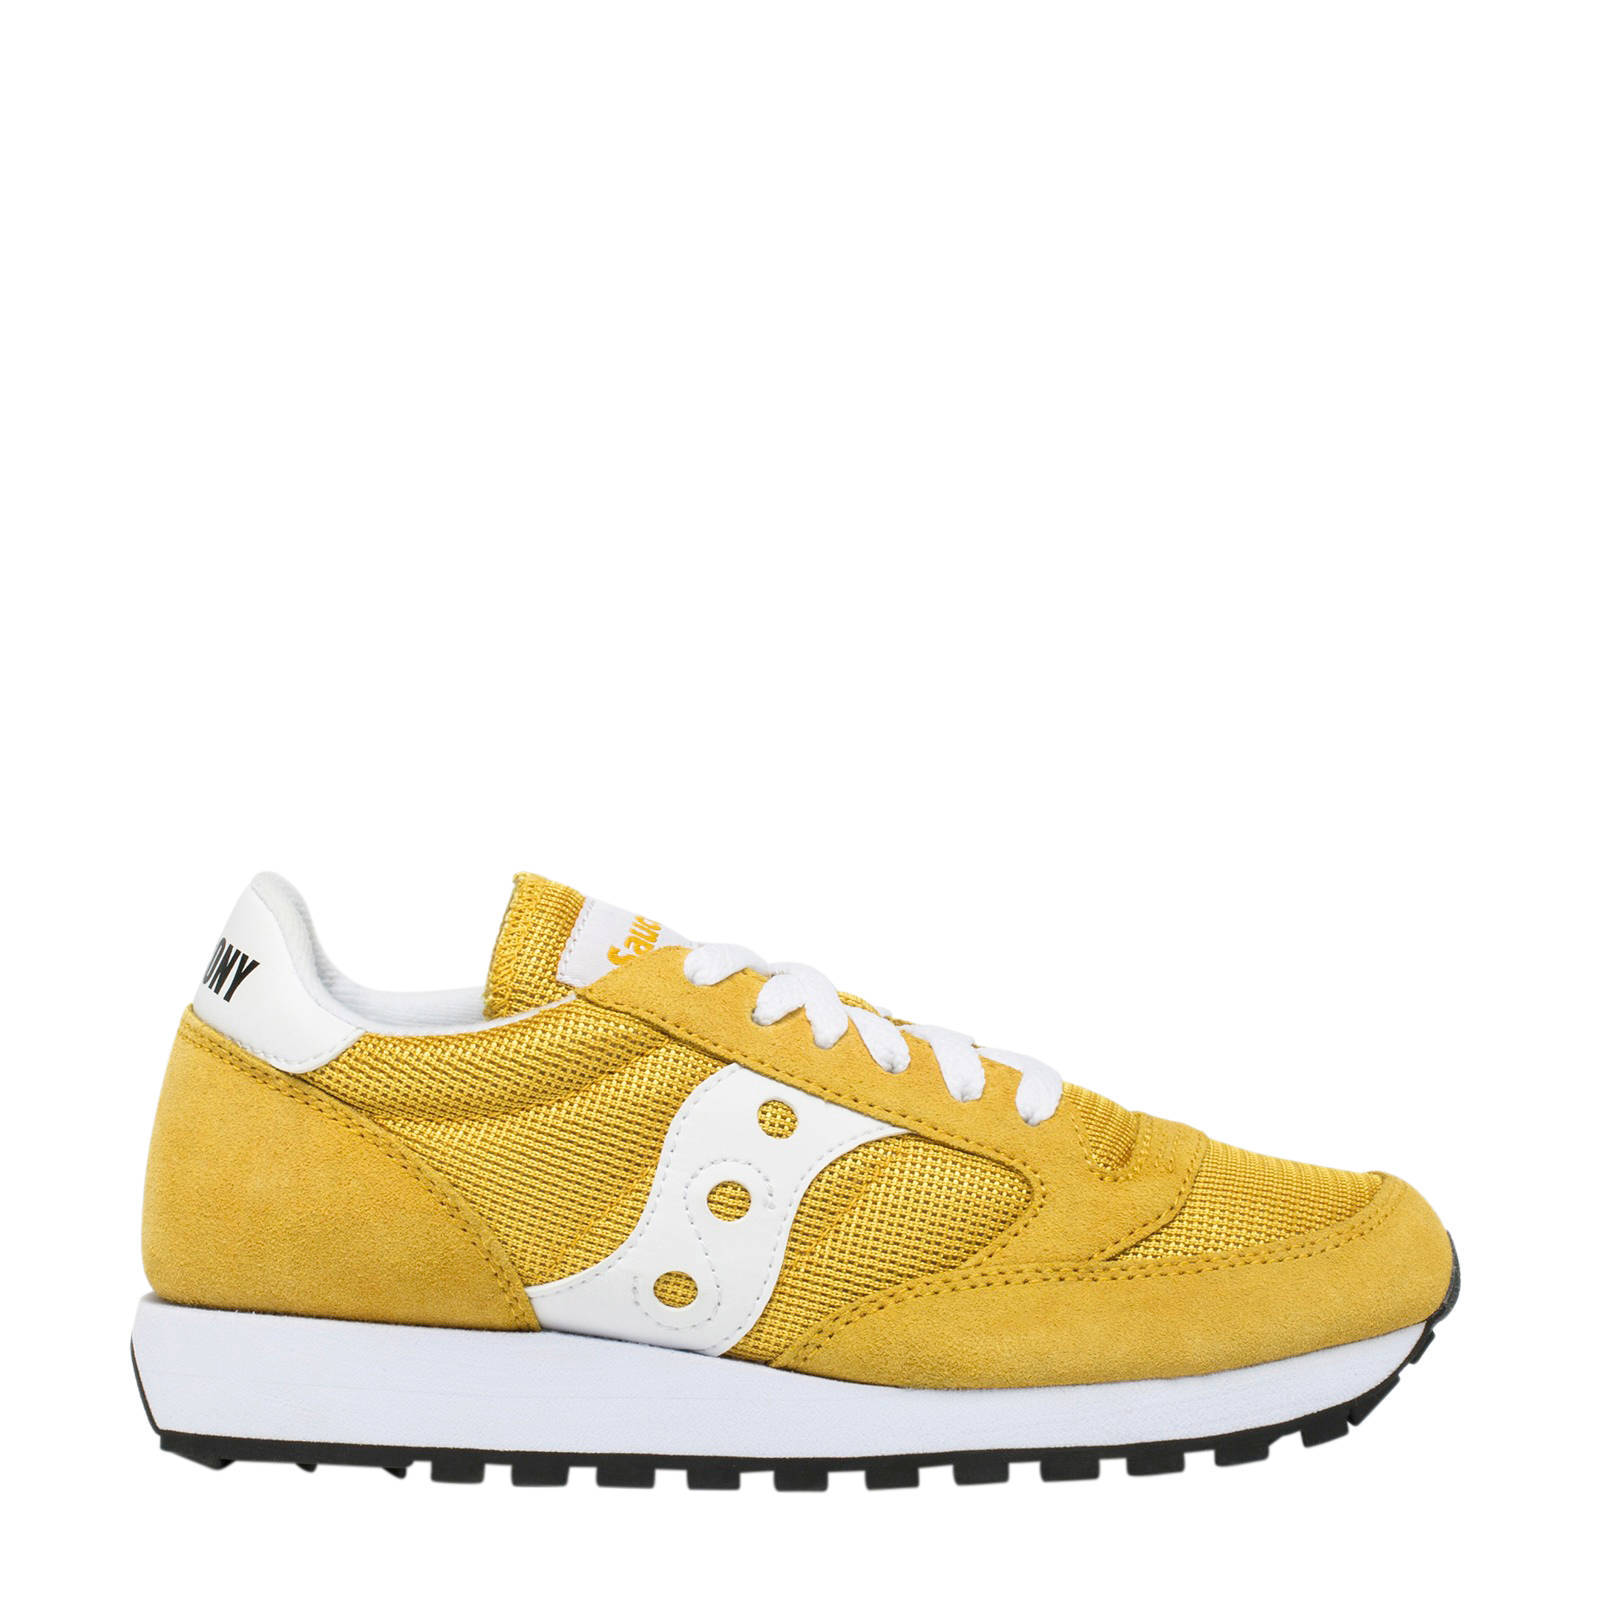 saucony sneakers geel, OFF 78%,Buy!